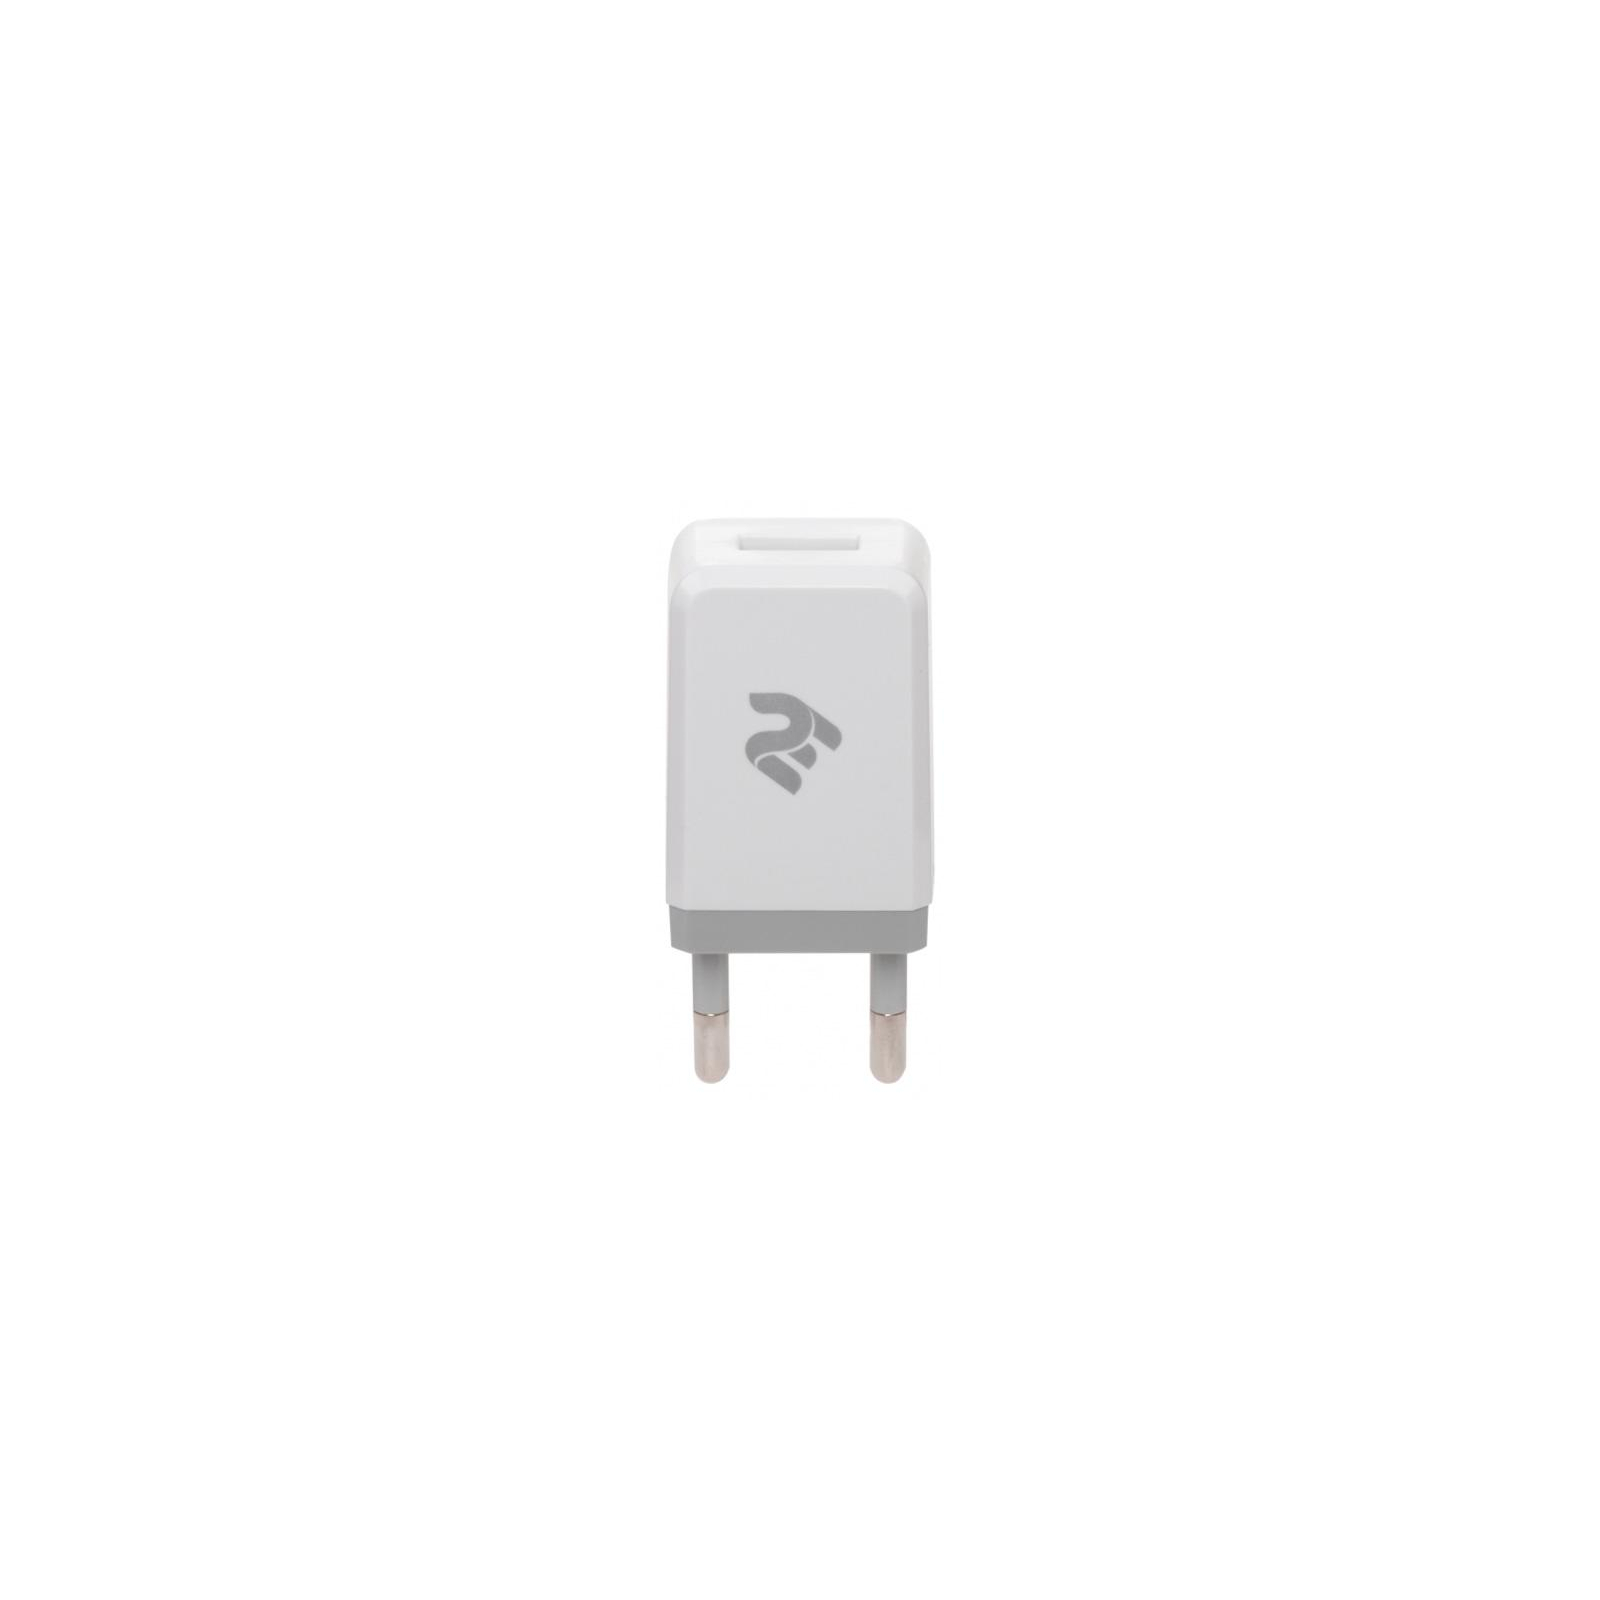 Зарядний пристрій 2E USB Wall Charger USB:DC5V/1A, white (2E-WC1USB1A-W)